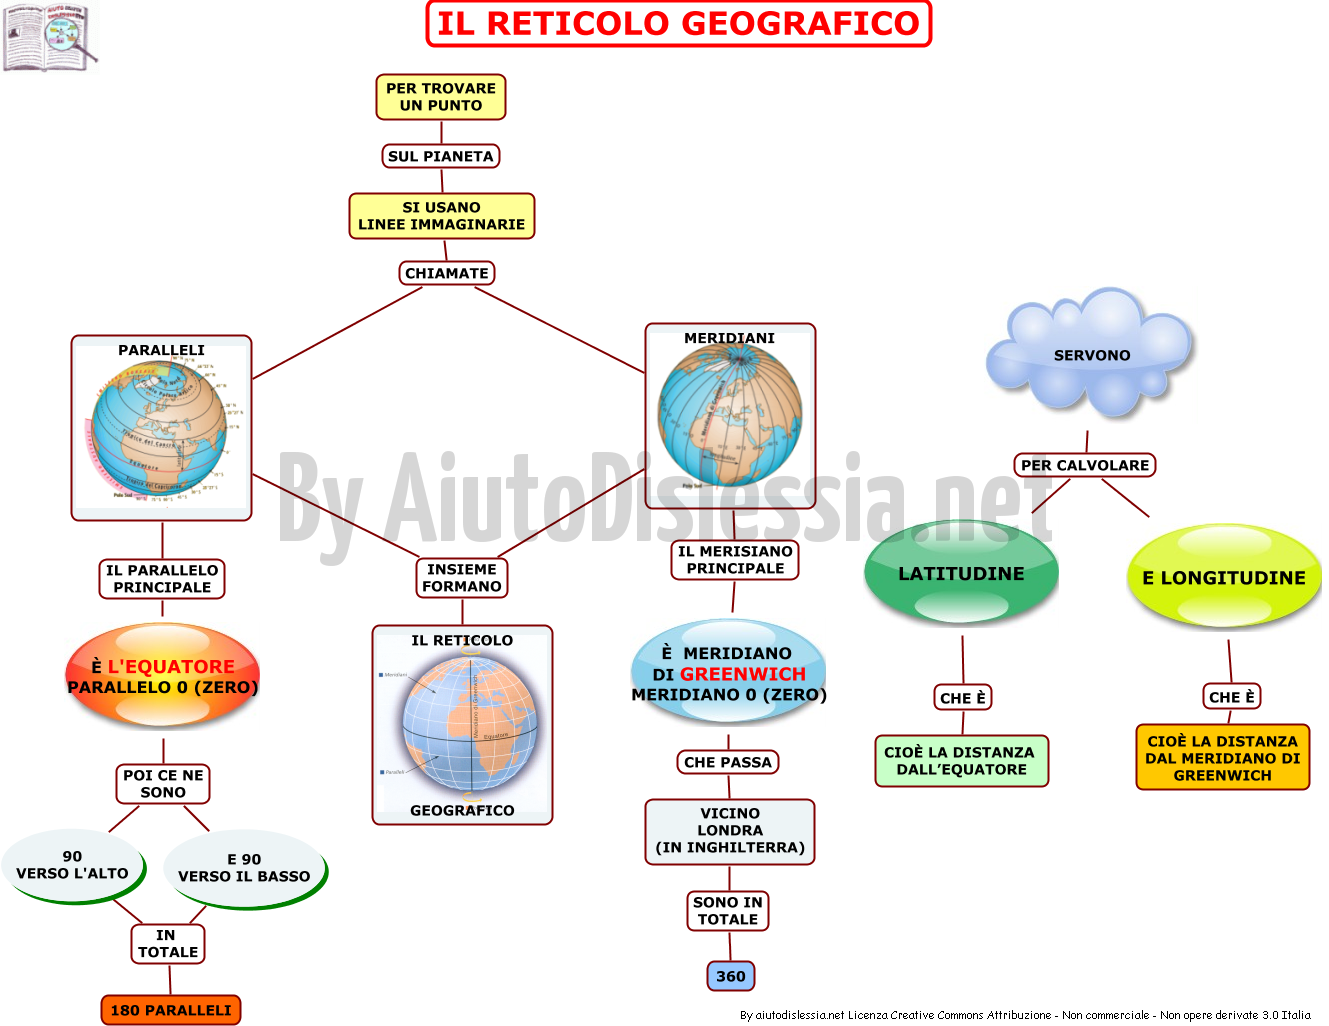 04-il-reticolo-geografico